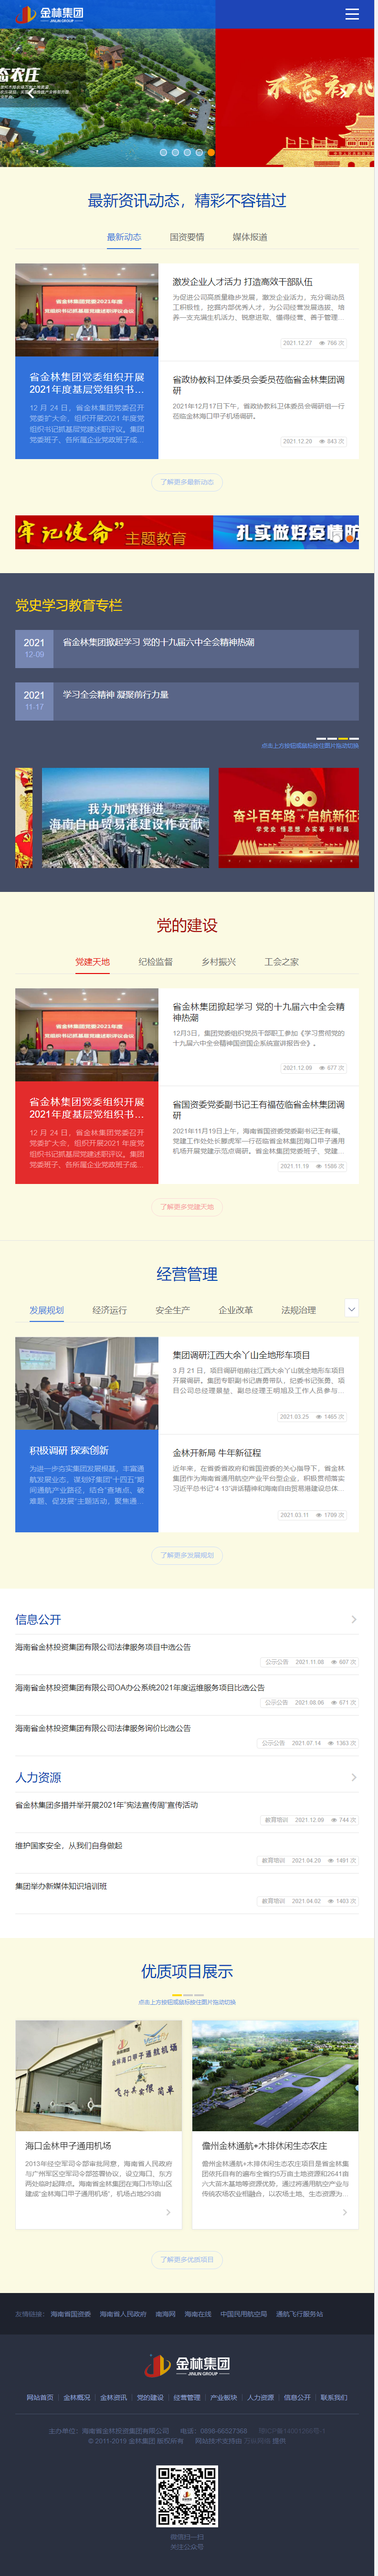 海南省金林投资集团有限公司网站案例